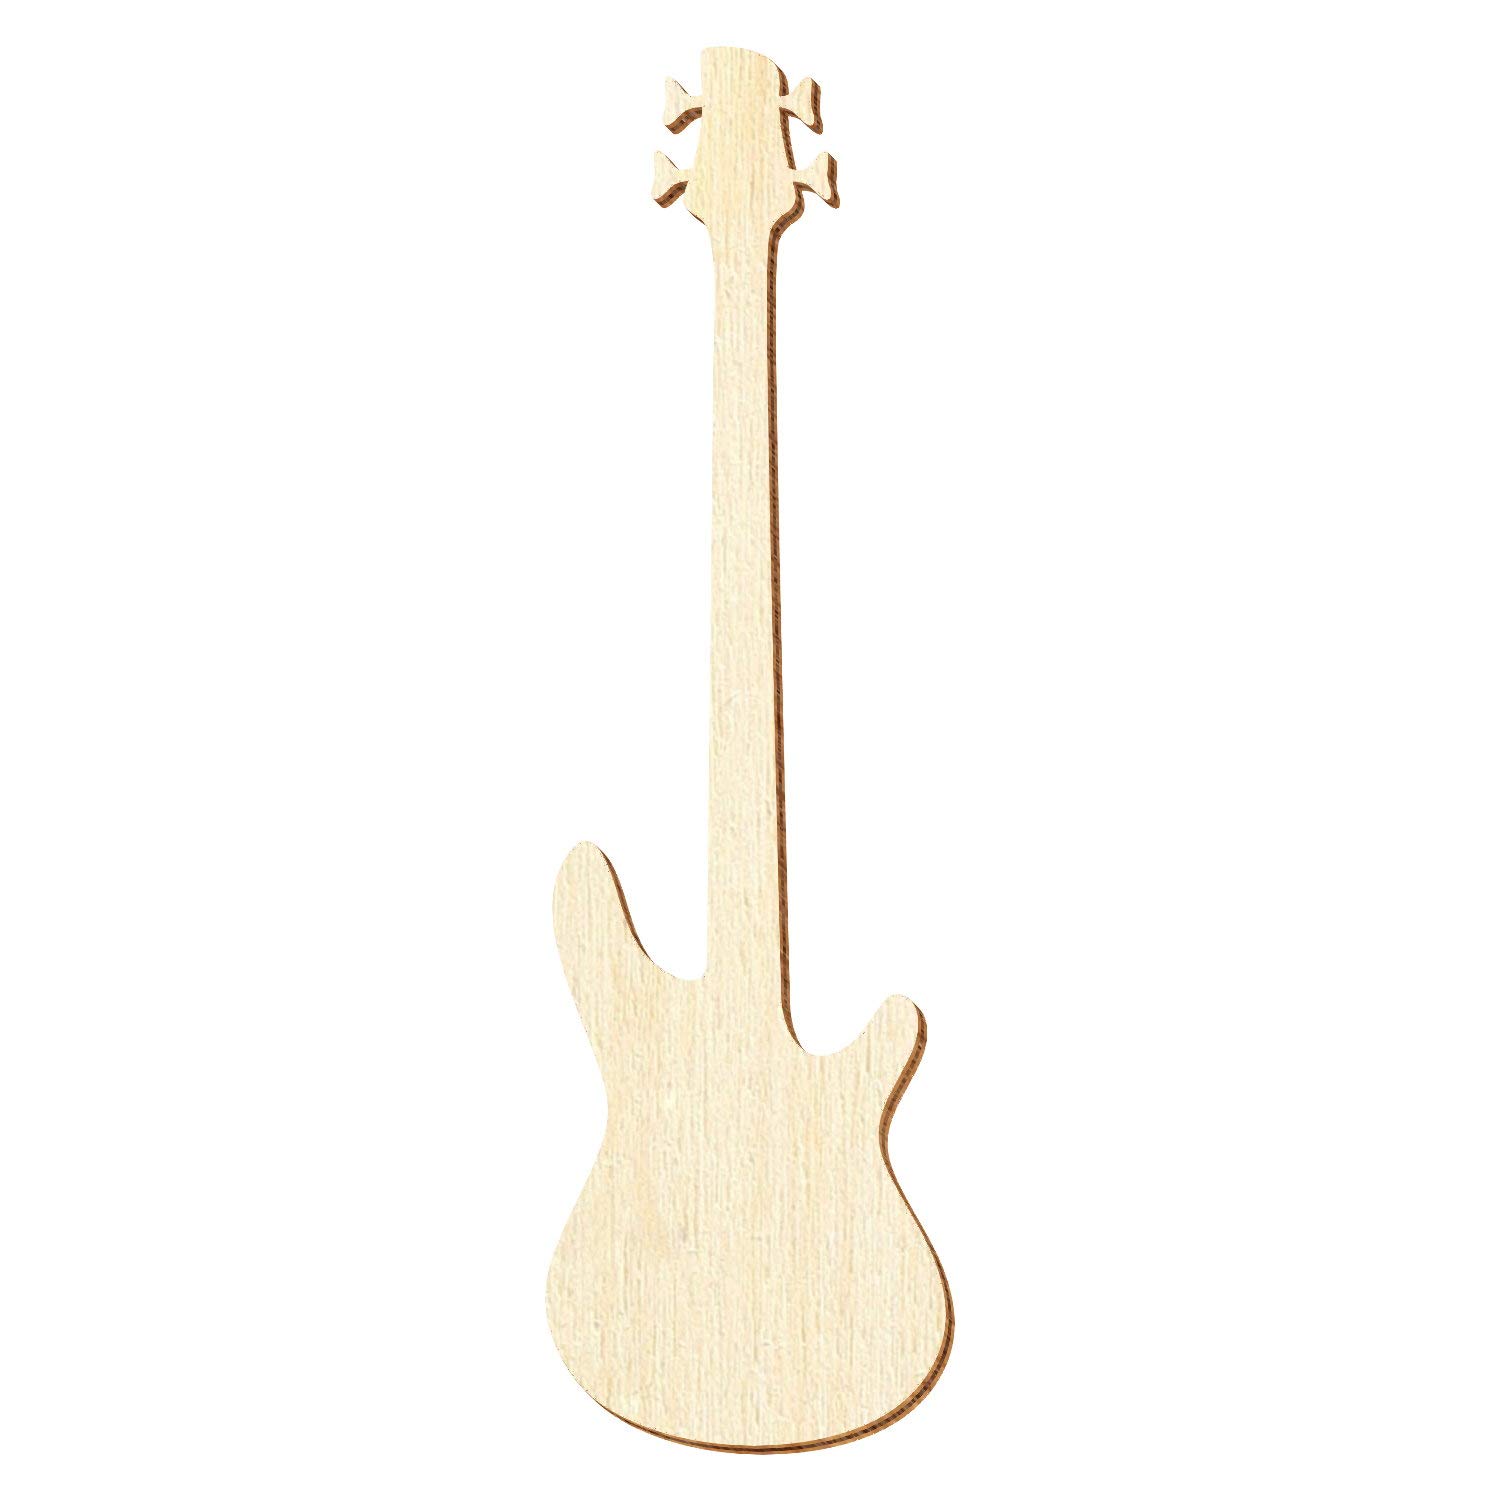 Holz Bassgitarre - Deko Zuschnitte Größenauswahl, Pack mit:25 Stück, Größe:37cm